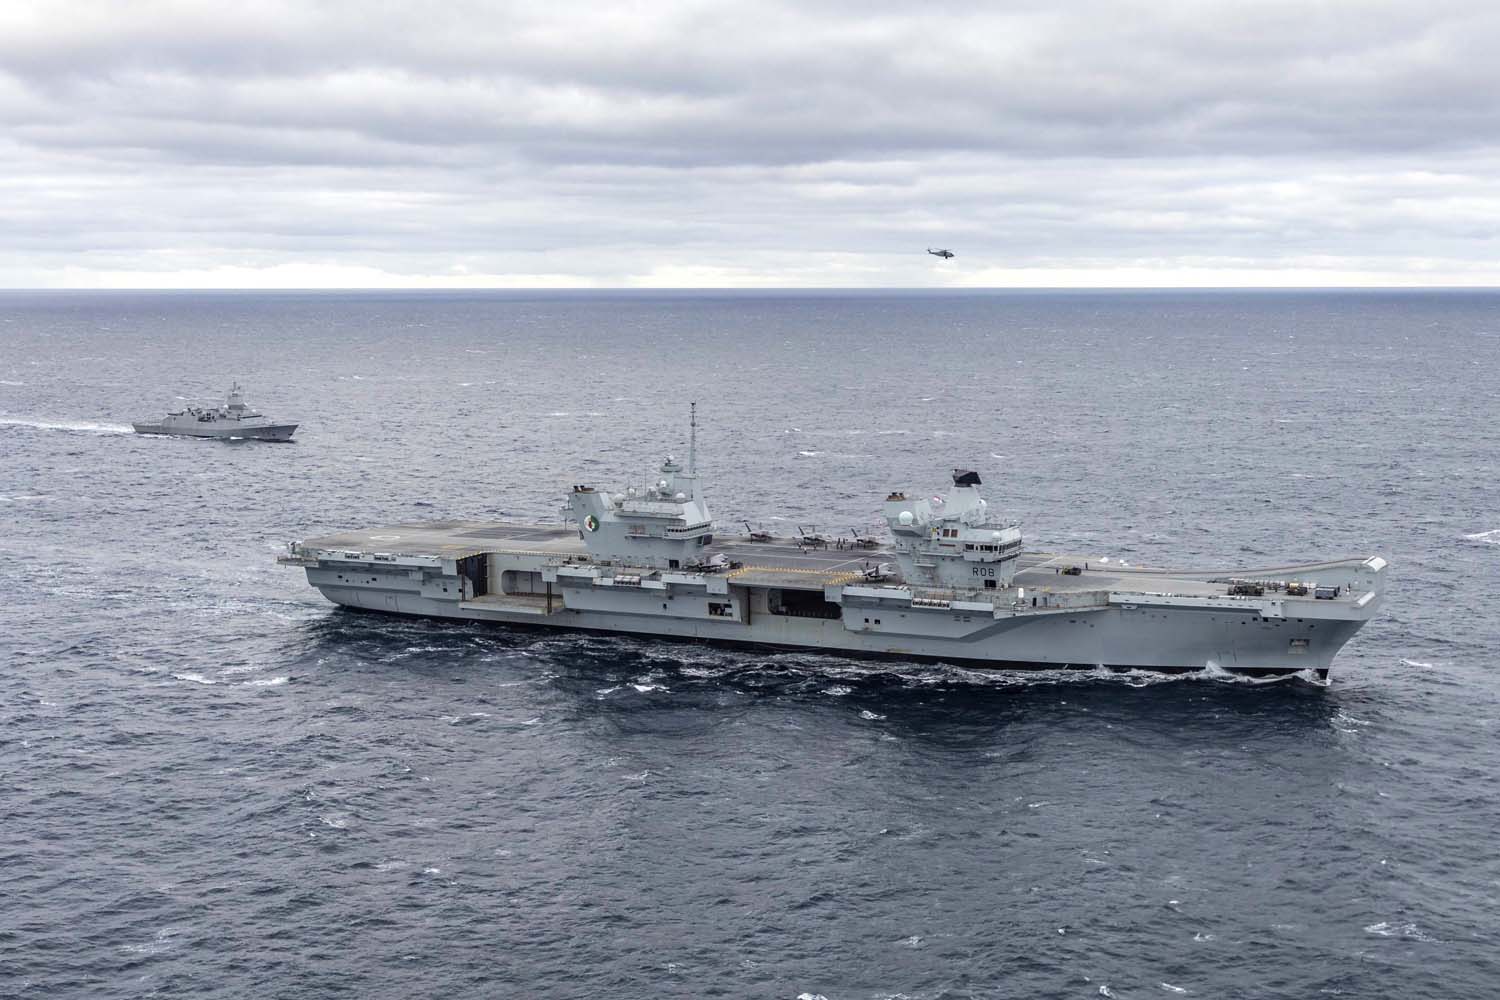 El portaaviones británico HMS Queen Elizabeth, que transporta cazas de quinta generación F-35B Lightning II, se ha transferido al mando de la OTAN por primera vez en la historia-15